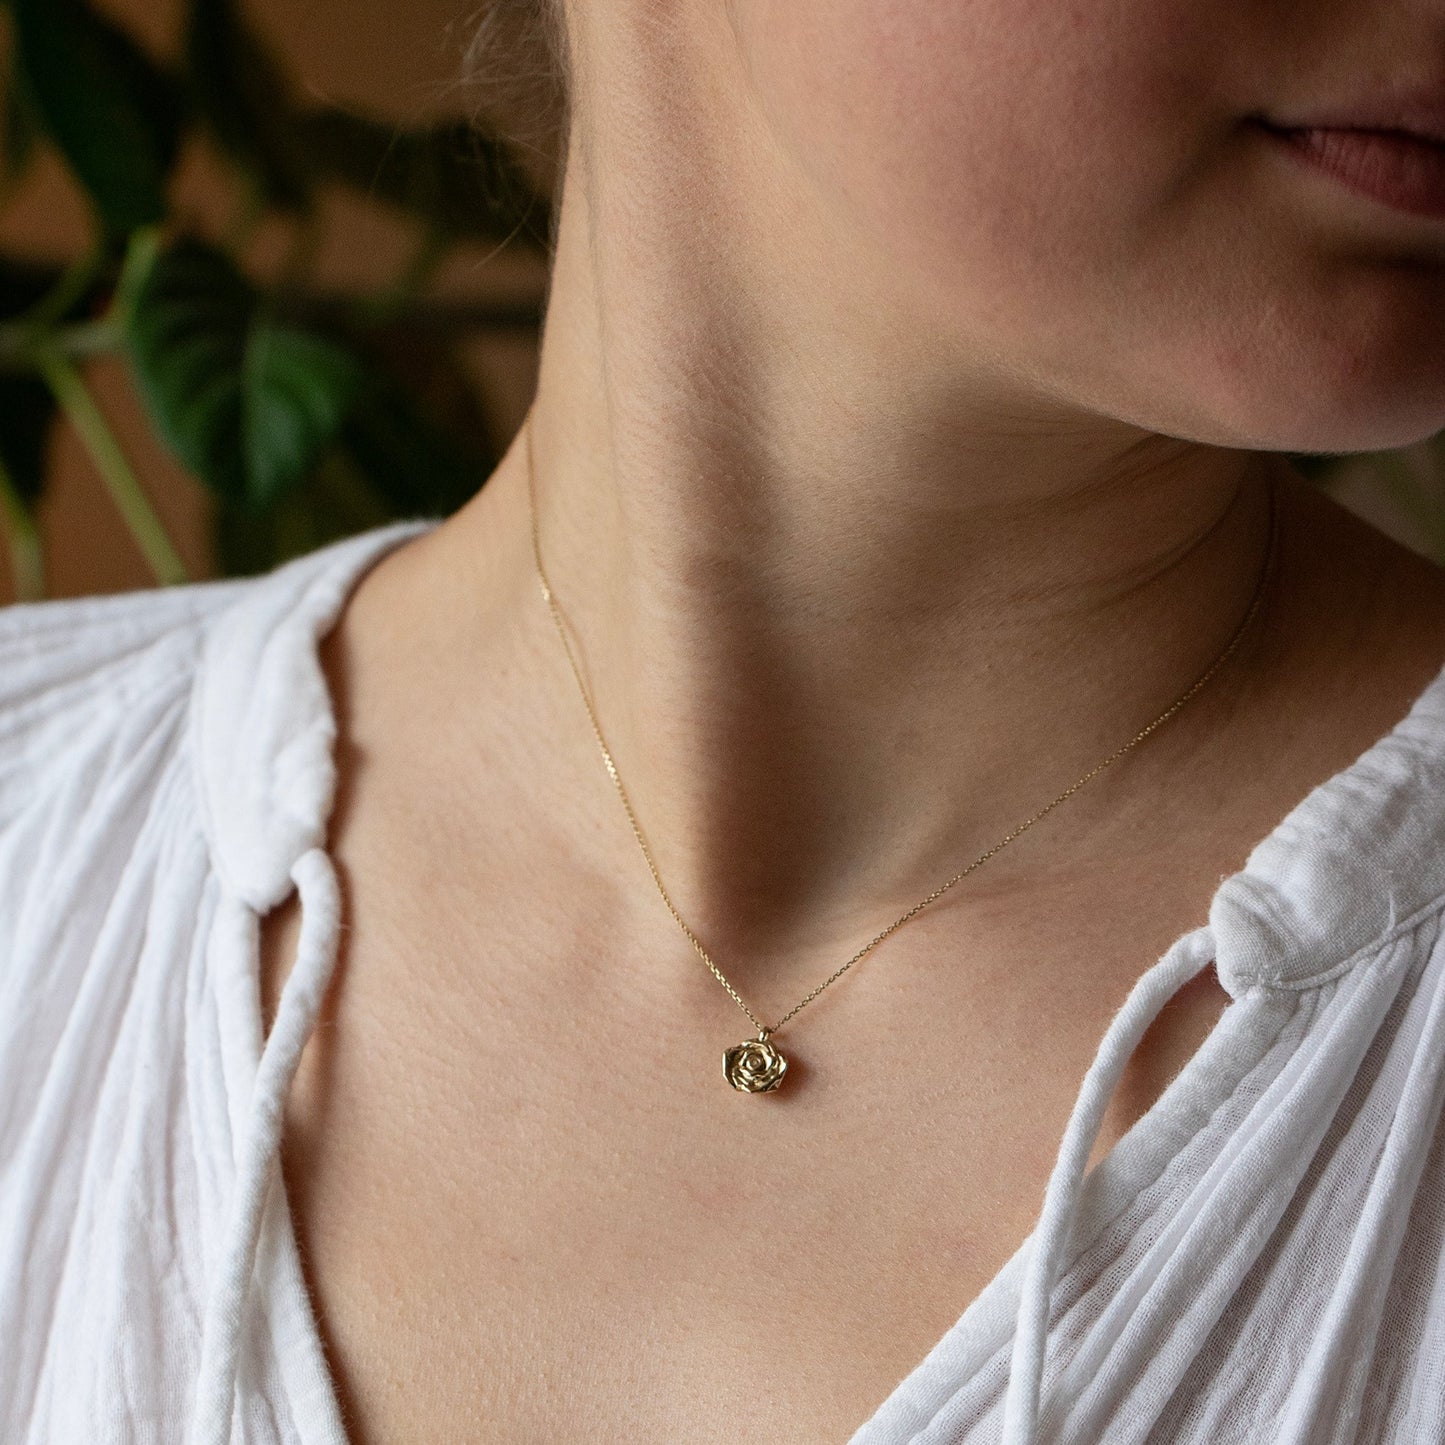 June Birth Flower & Birthstone Necklace - Rose & Alexandrite - 9kt Gold